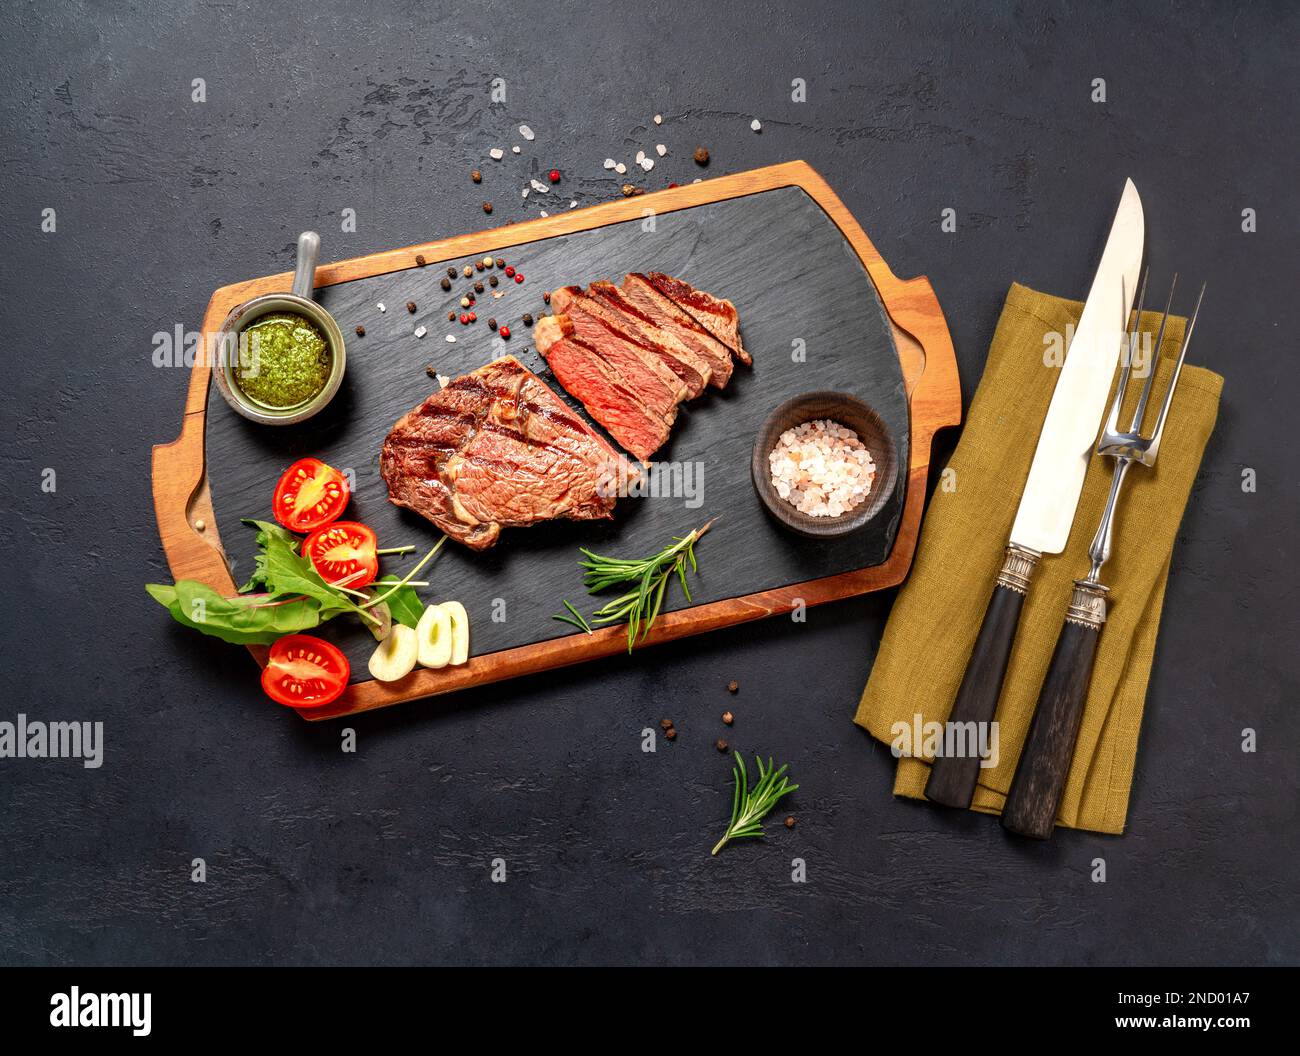 Steak de bœuf à la ribeye grillé, sauce chimichurri, herbes et épices sur une table sombre. Steak en tranches sur le tableau noir pour le steak Banque D'Images